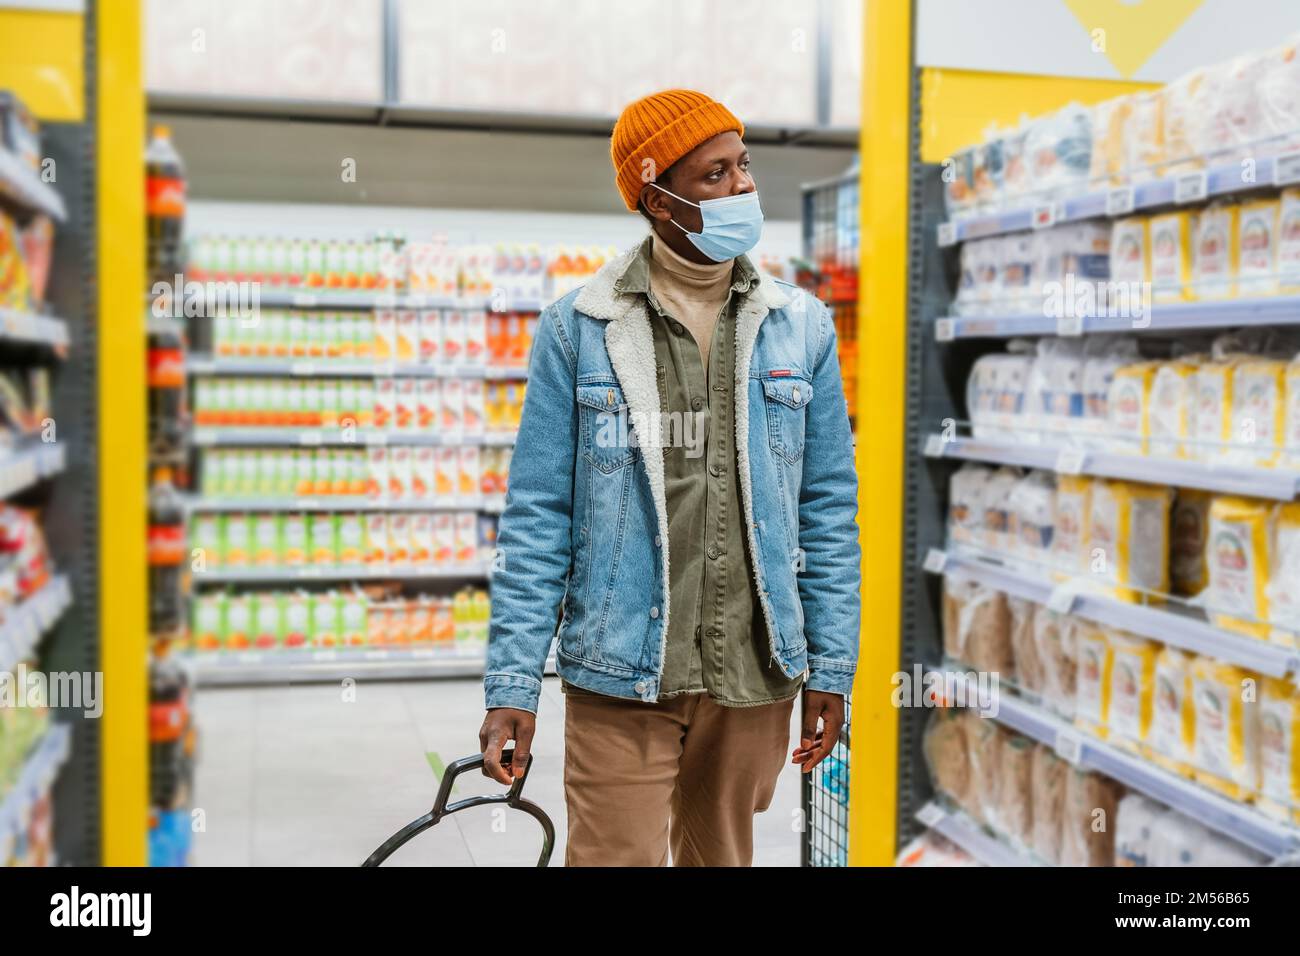 Joven afroamericano con sombrero naranja con máscara protectora camina mirando las estanterías con artículos en el departamento de supermercados Foto de stock